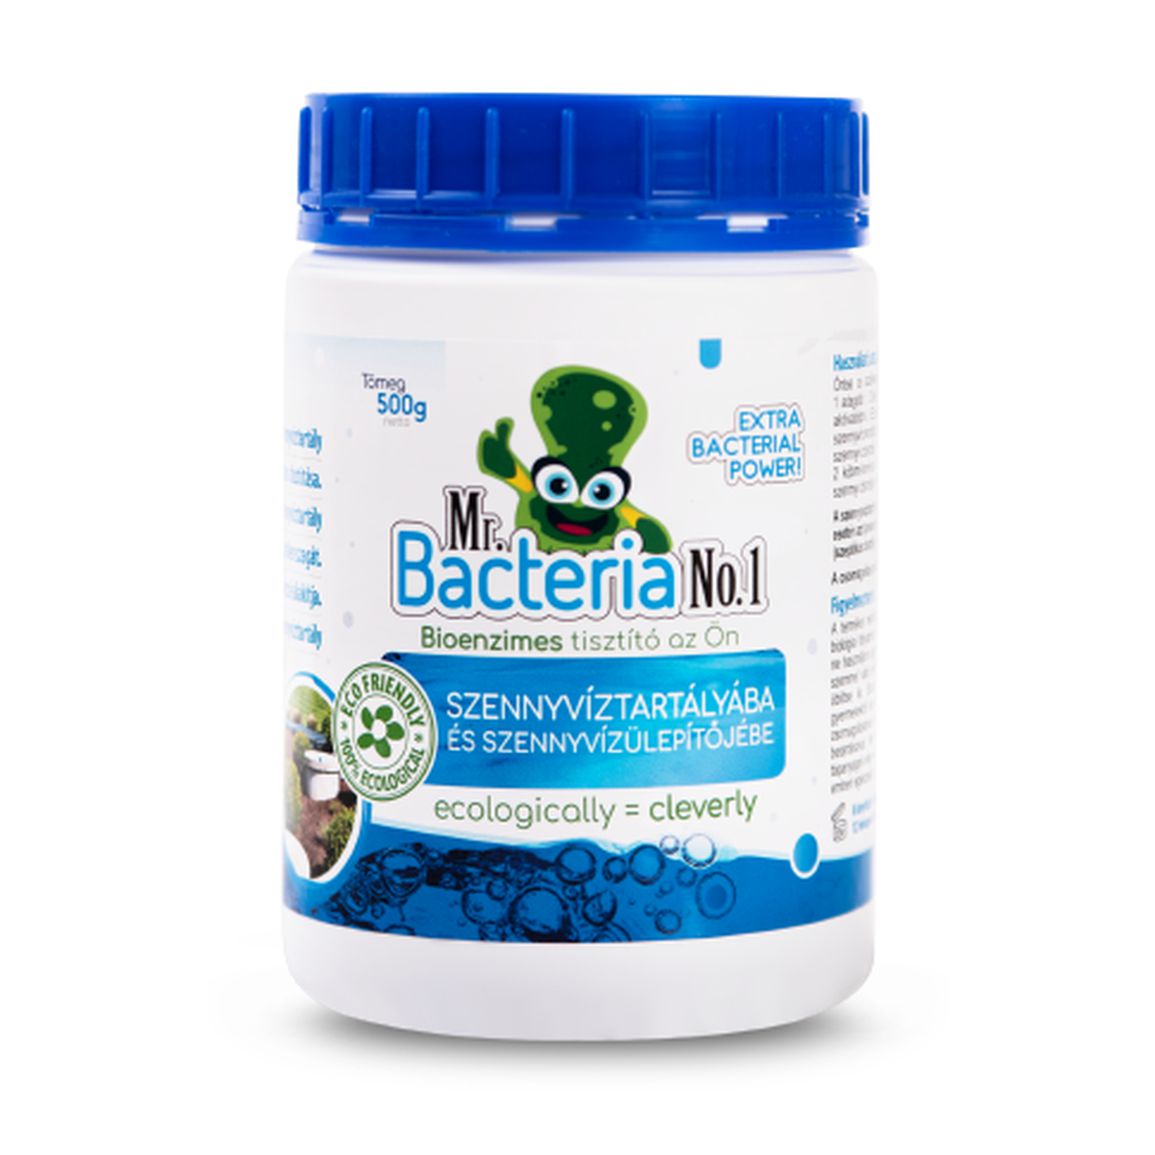 Mr. Bacteria No.1 Bioenzimes tisztító az Ön